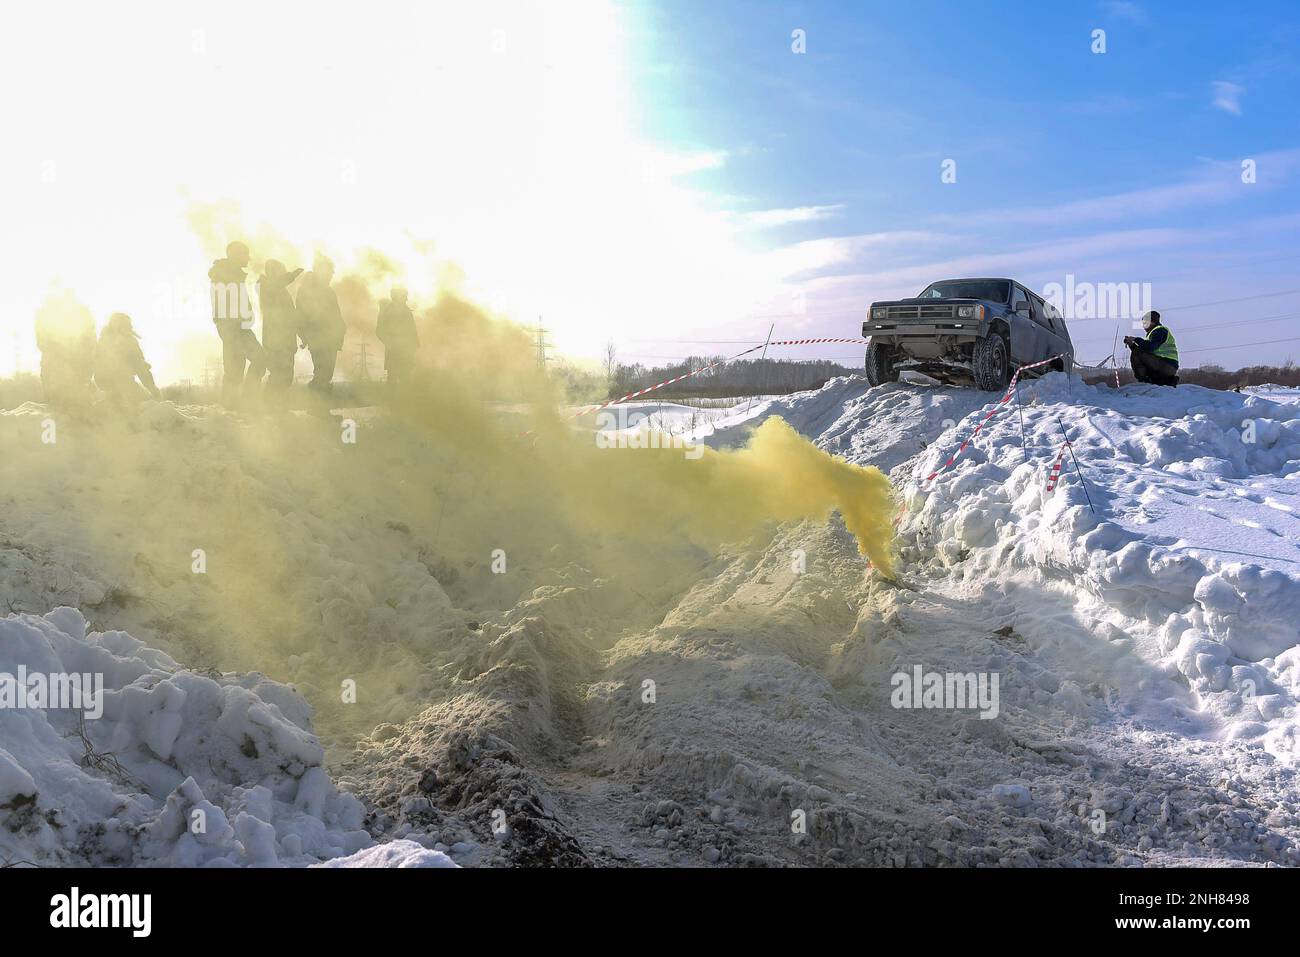 Le vus offroad « Toyota 4Runner Fourrunner 4x4 » se déplace sur une montagne de neige devant la fumée jaune colorée. Banque D'Images